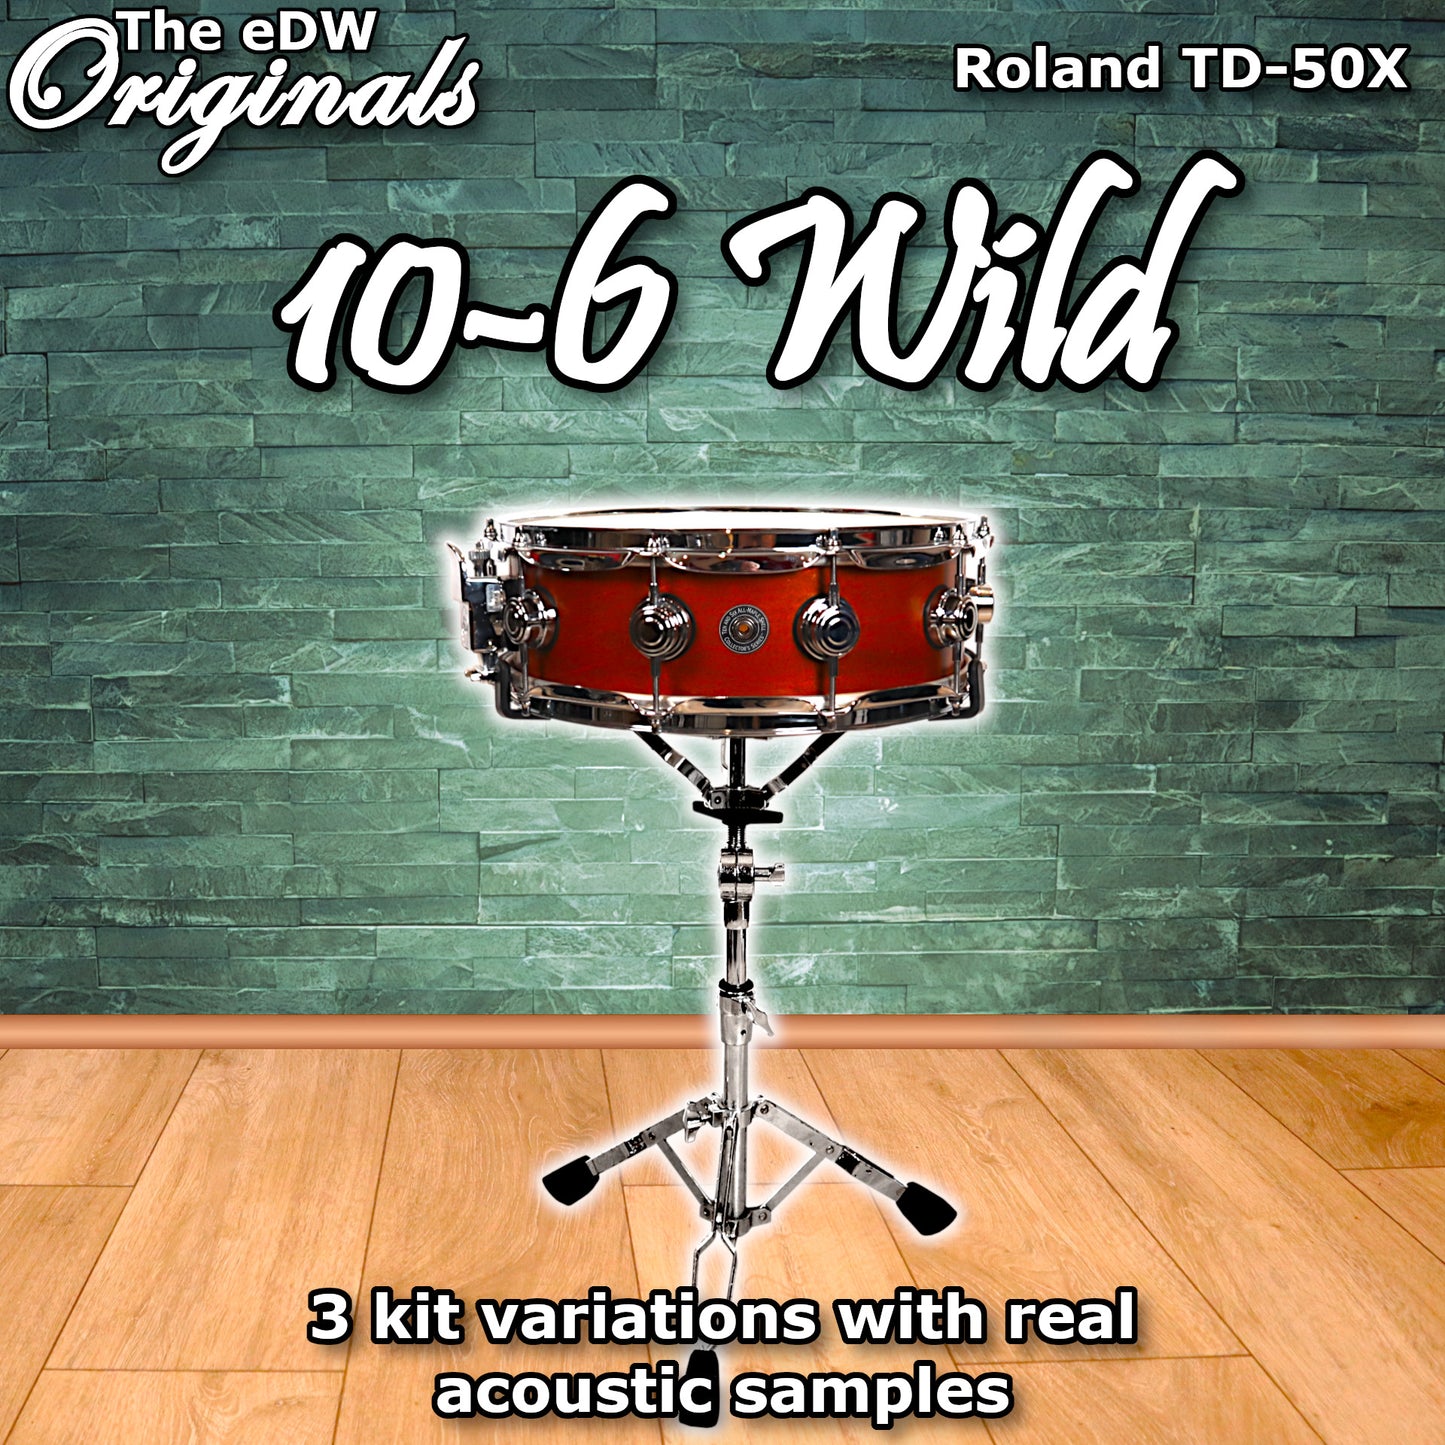 10-6 Wild | Roland TD-50X